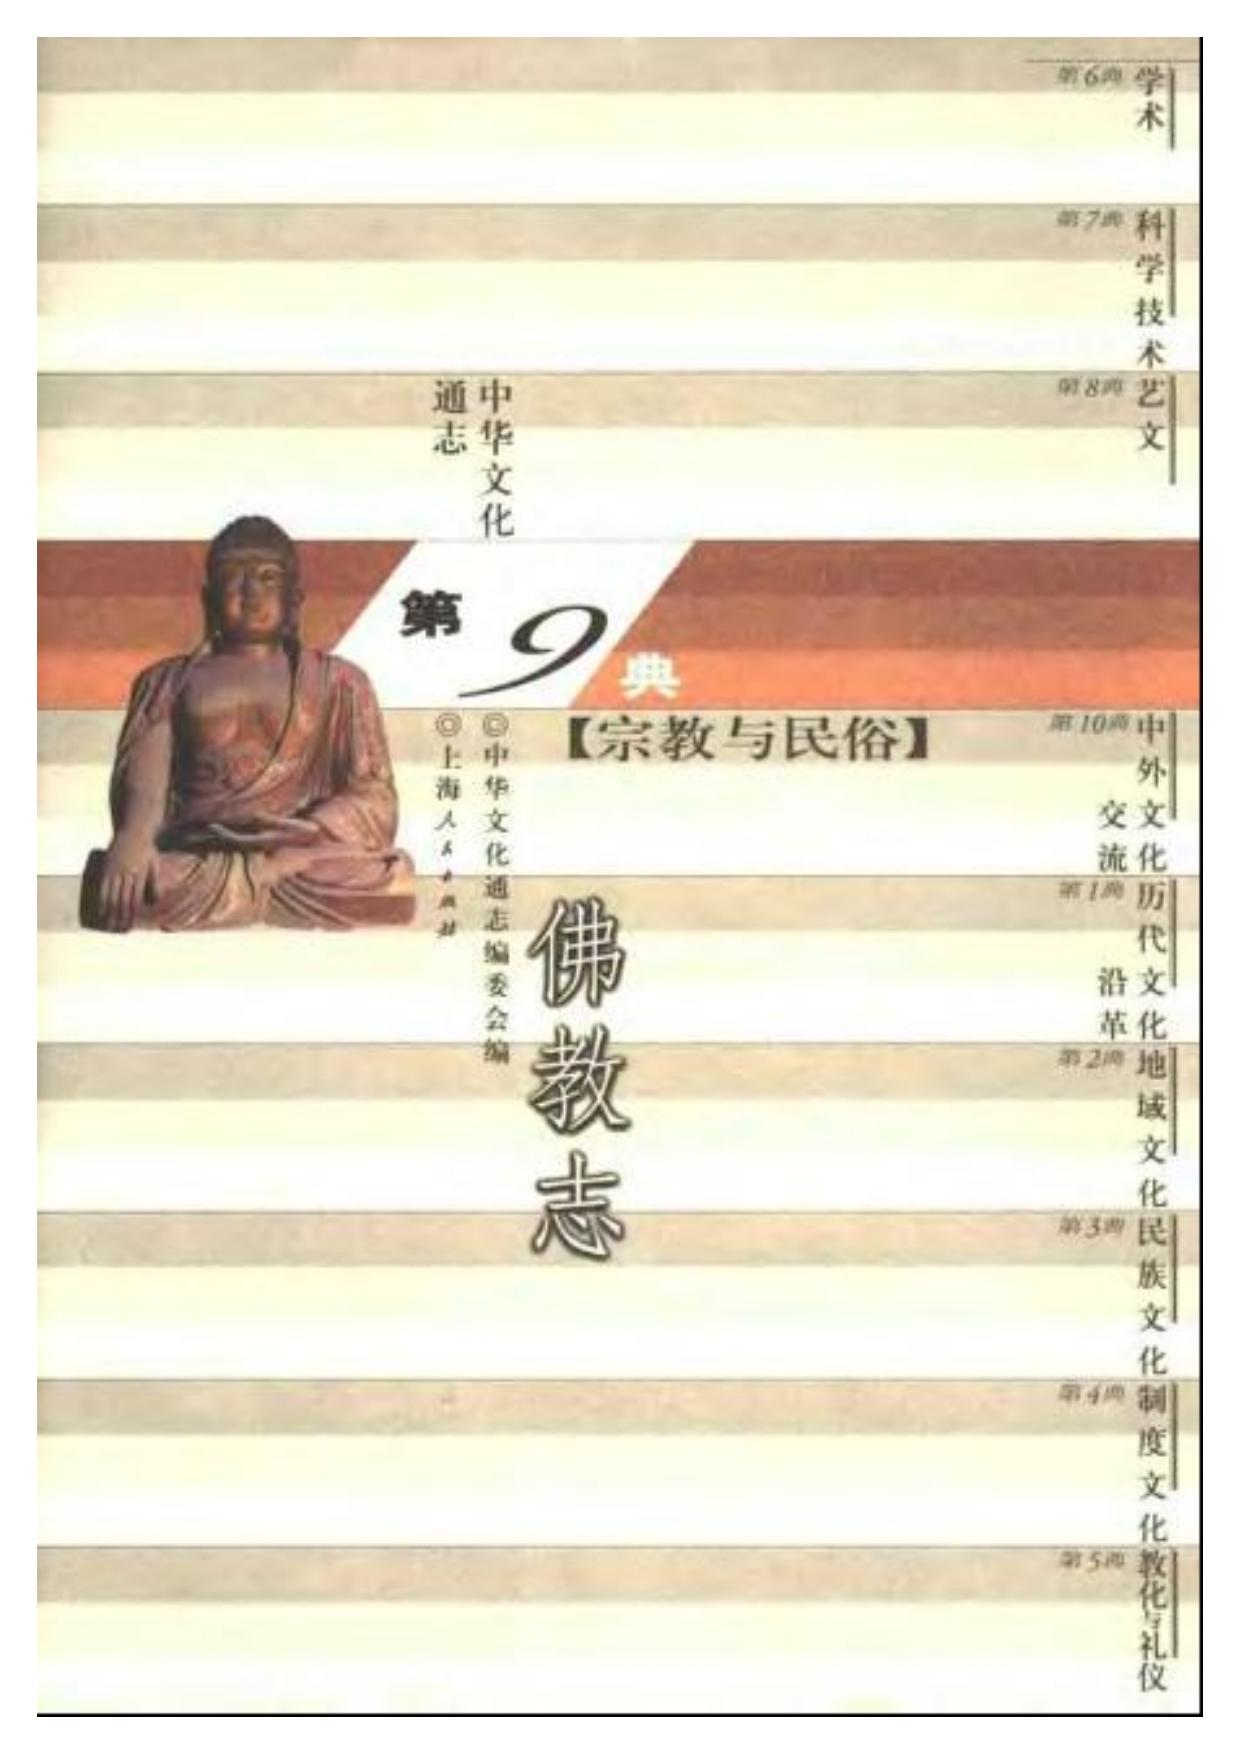 中华文化通志 宗教与民俗 佛教志